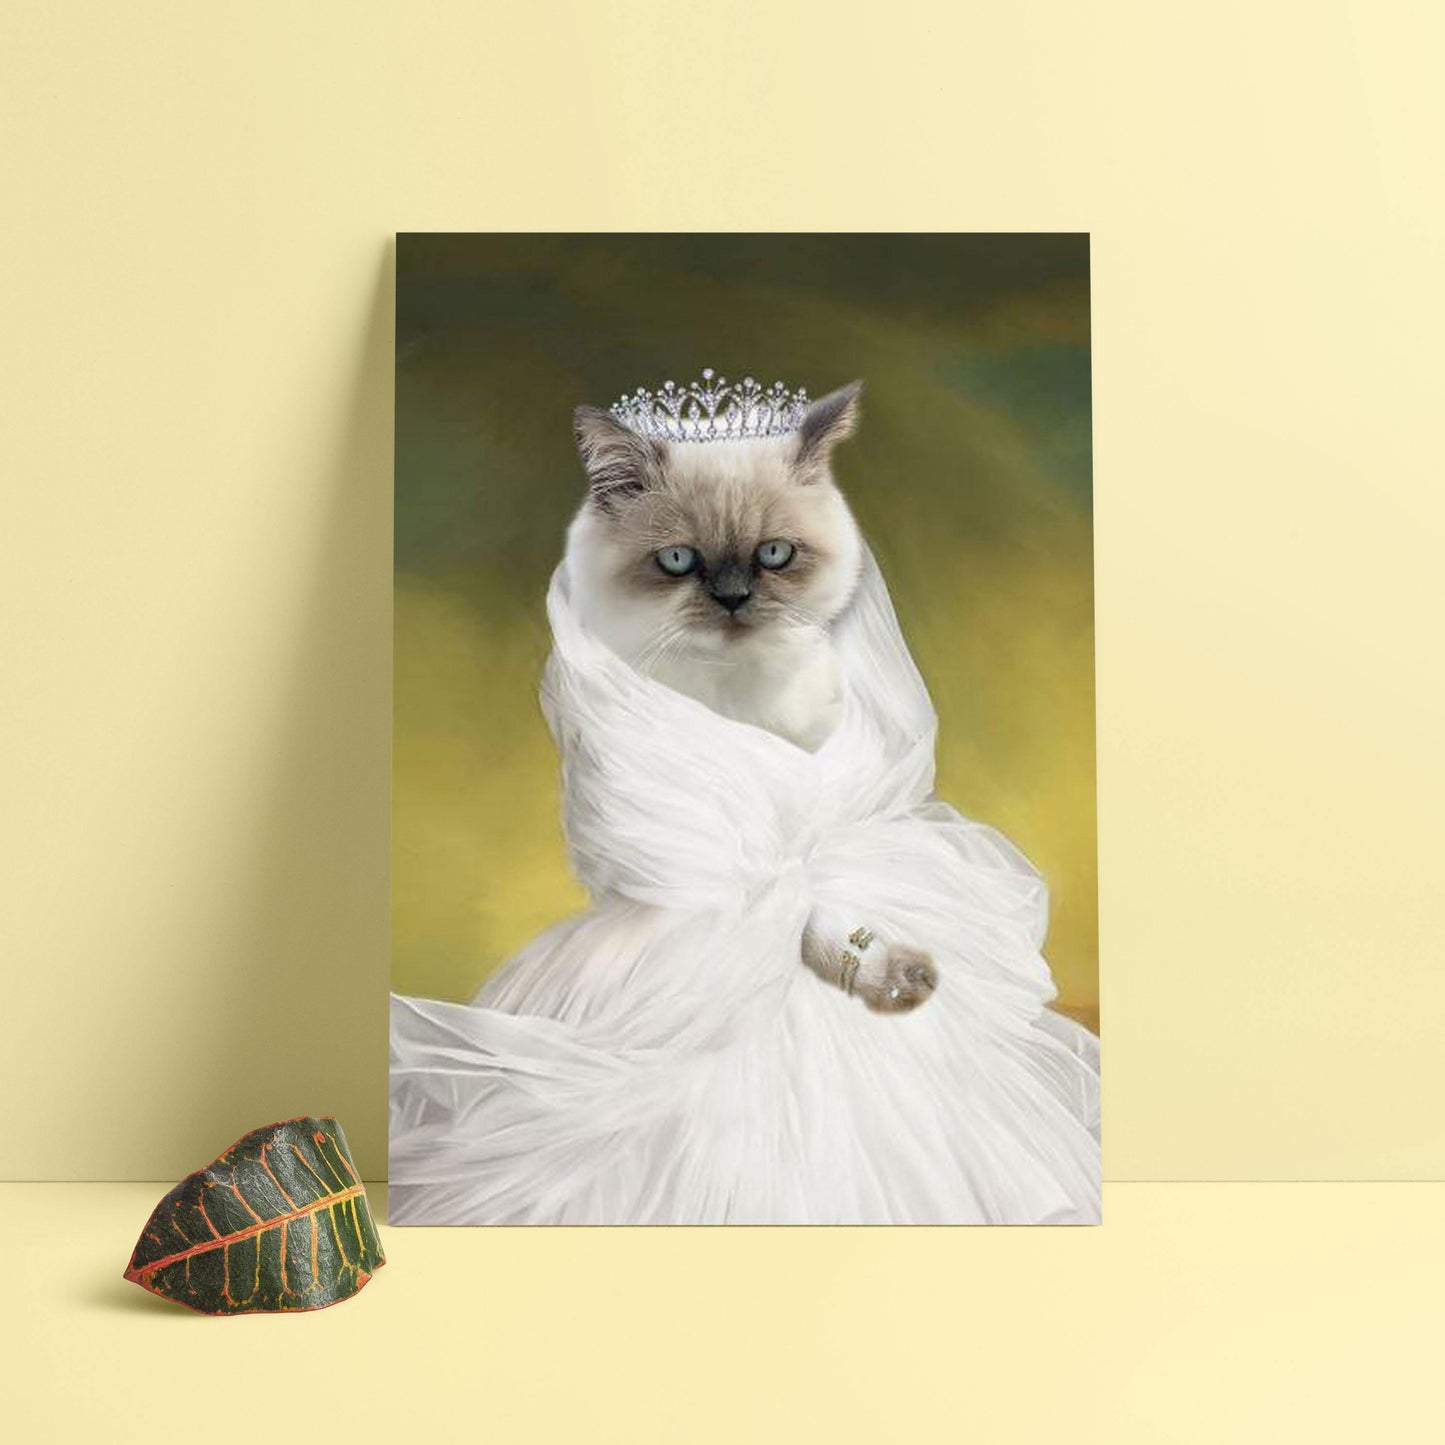 Prenses kedi tablosu yaptırmak için sitemizi ziyaret et. Birbirinden güzel evcil hayvan tablosu seçenekleri için hemen tıkla.